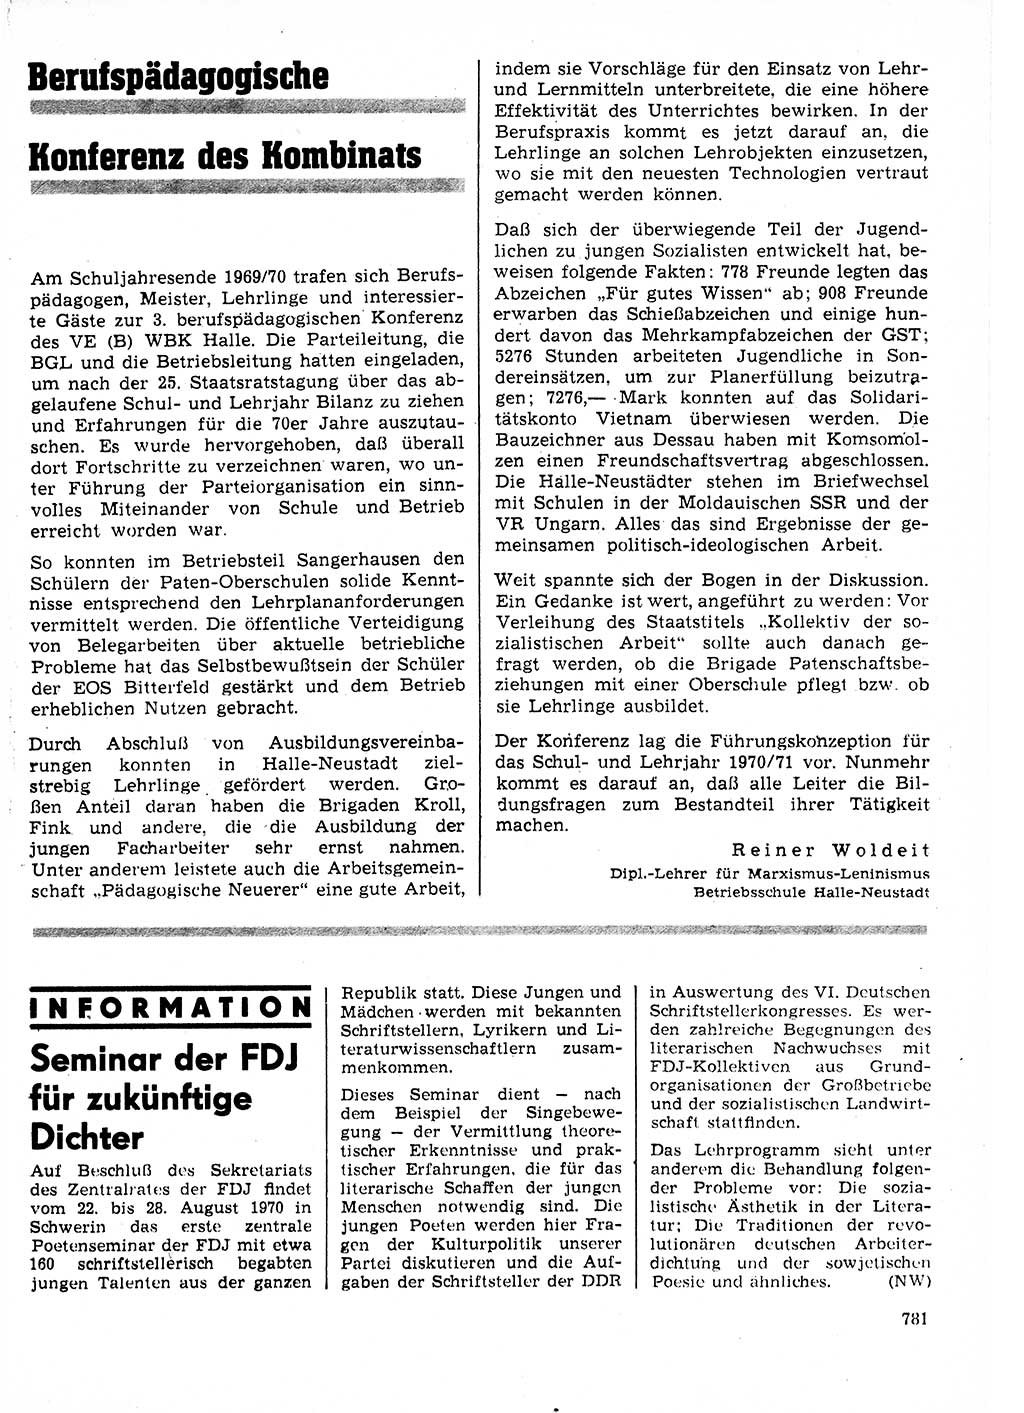 Neuer Weg (NW), Organ des Zentralkomitees (ZK) der SED (Sozialistische Einheitspartei Deutschlands) für Fragen des Parteilebens, 25. Jahrgang [Deutsche Demokratische Republik (DDR)] 1970, Seite 781 (NW ZK SED DDR 1970, S. 781)